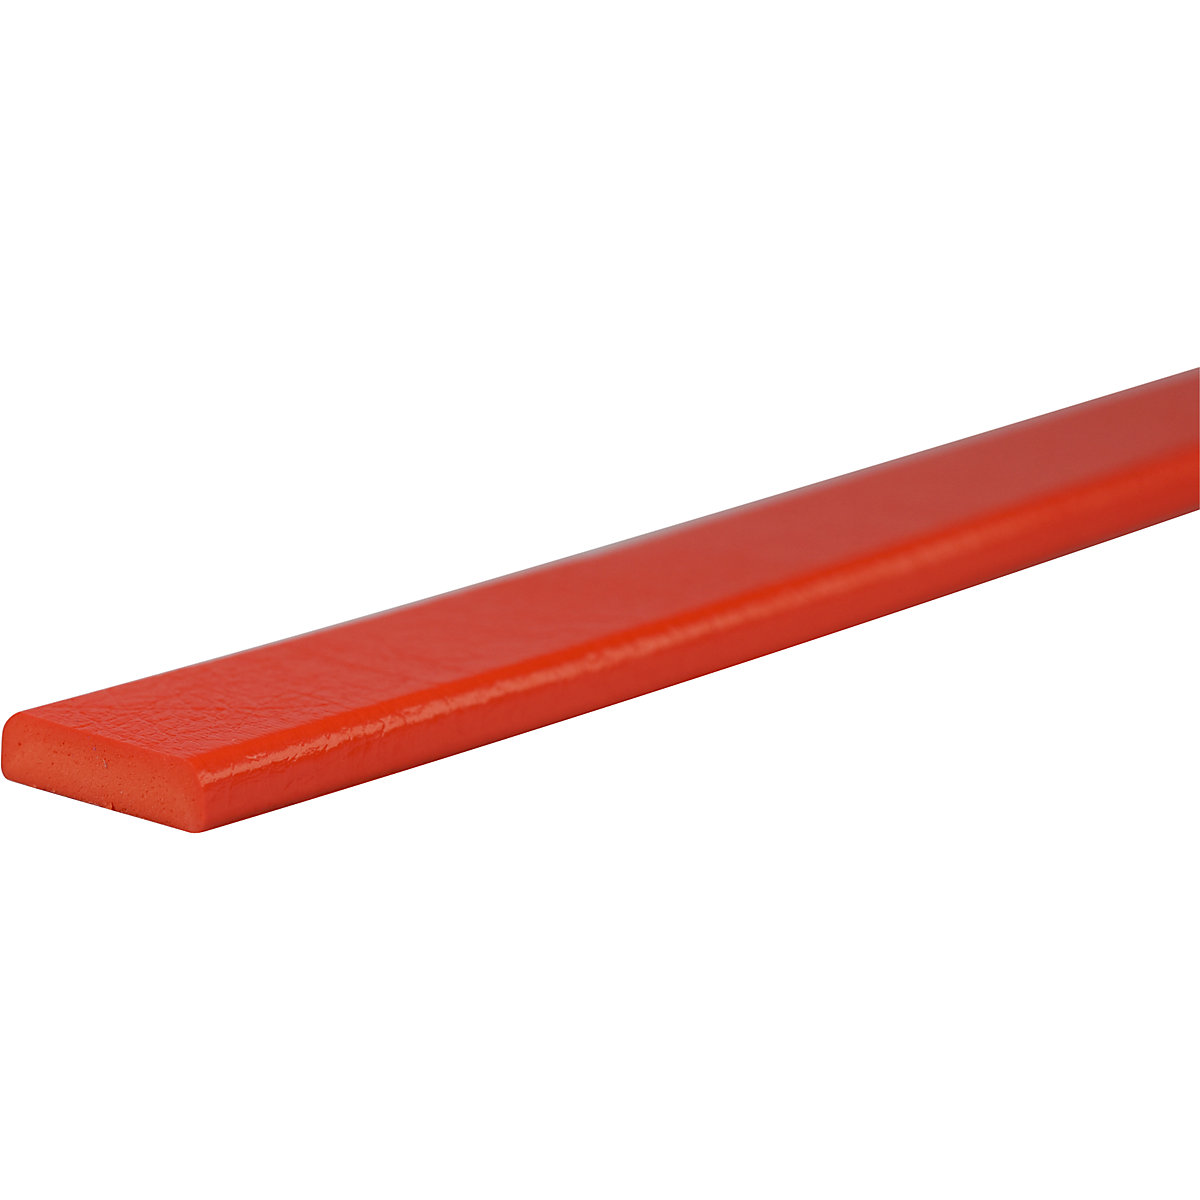 Knuffi® felületvédő – SHG, F típus, 1 m-es darab, piros-33